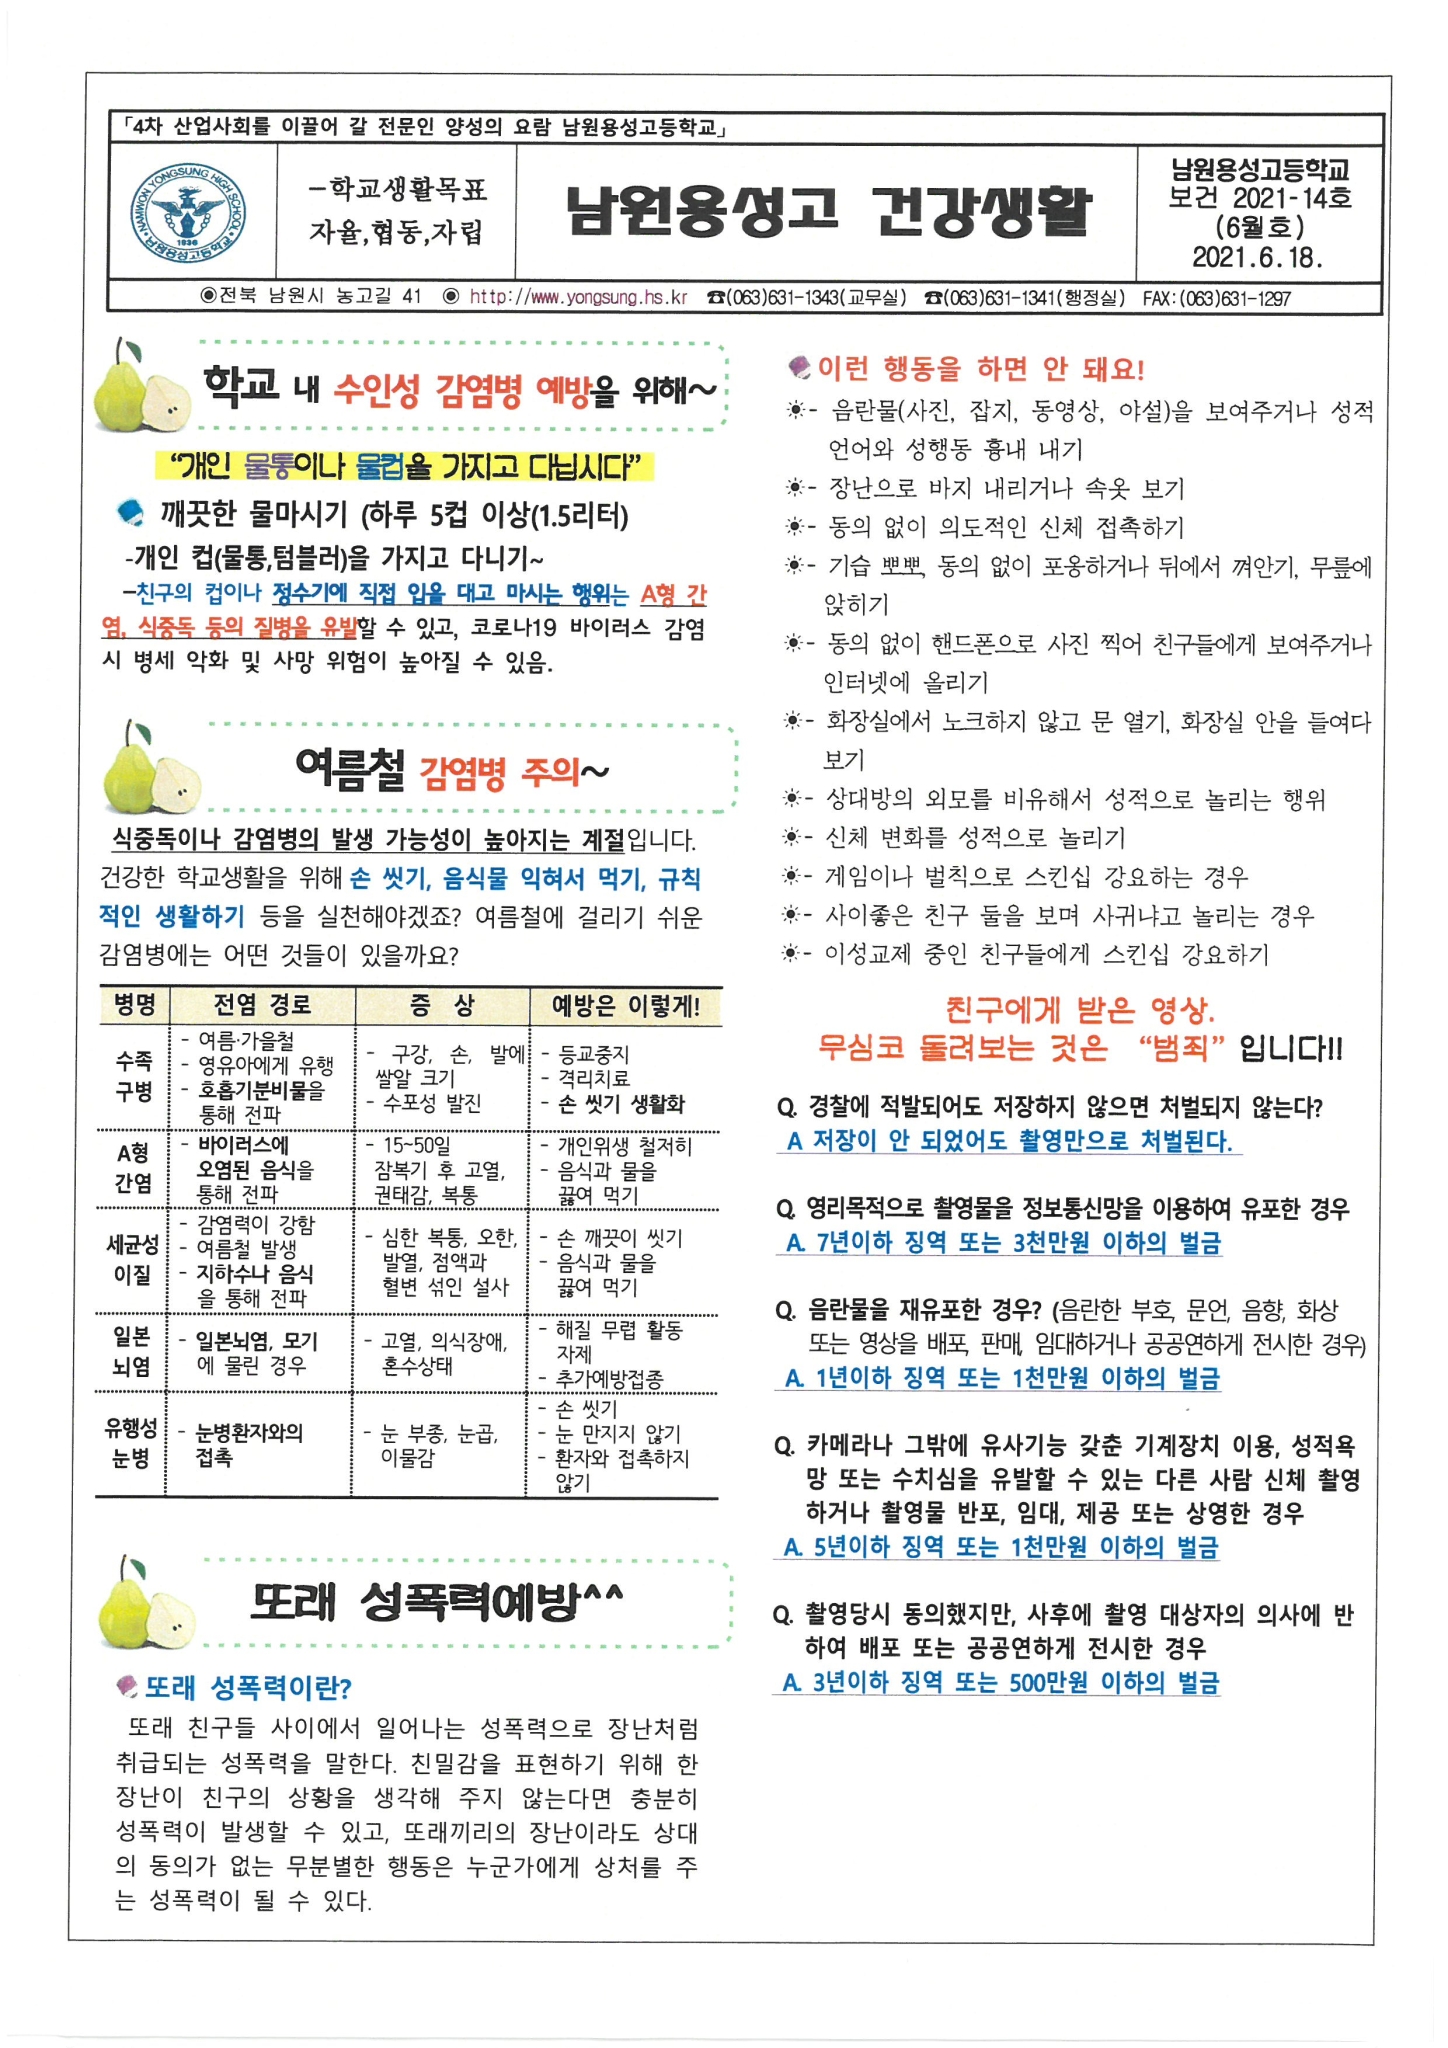 남원 용성고 건강생활(2021-6월호)1